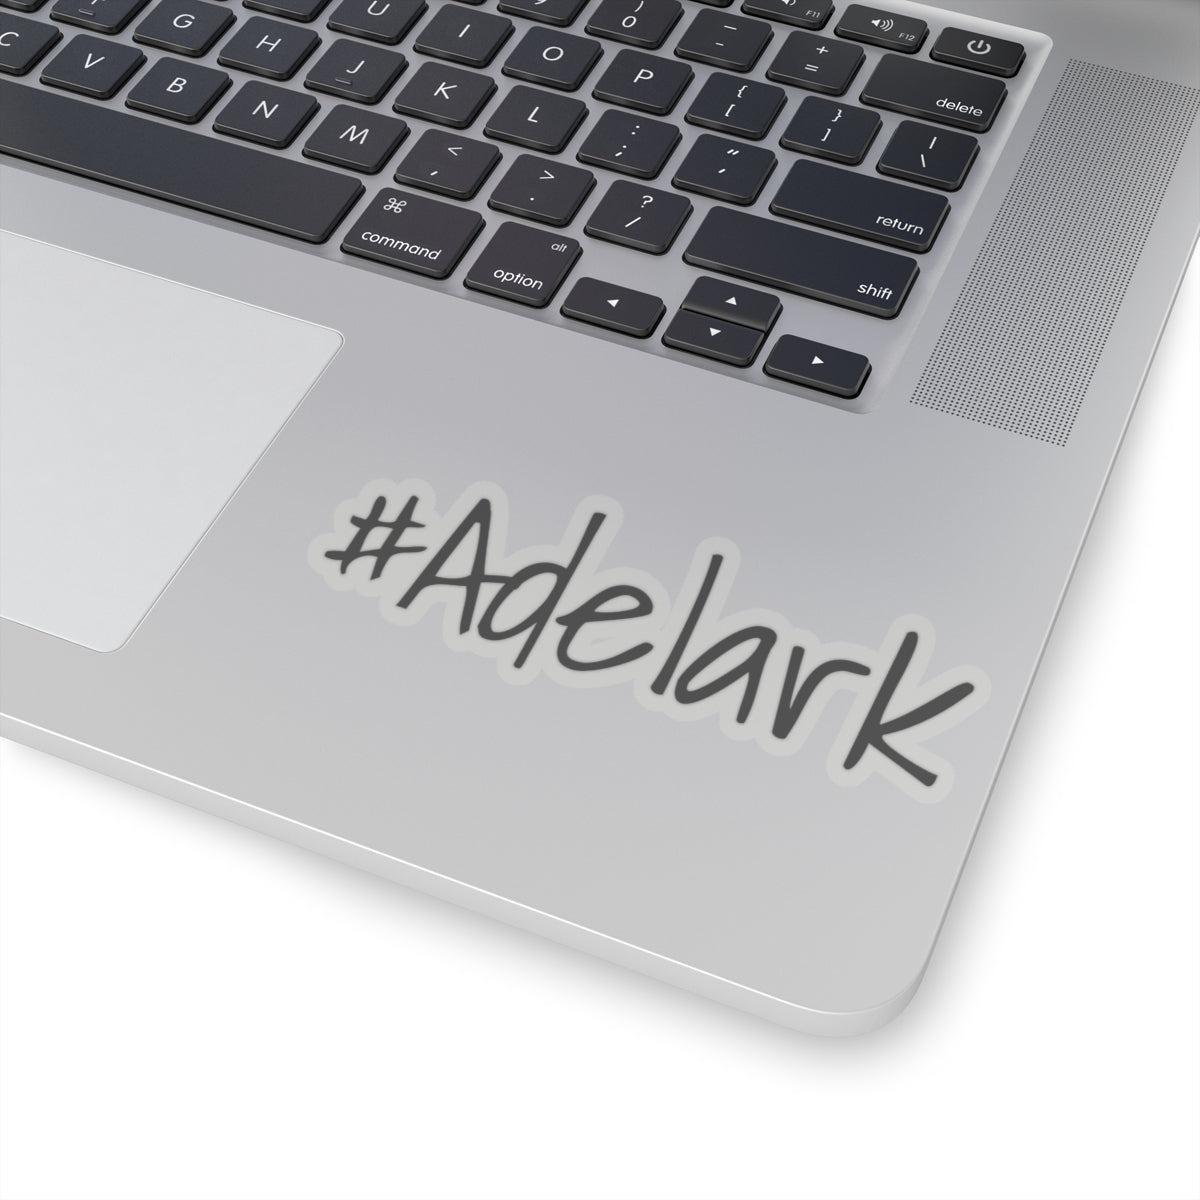 Adelark Sticker